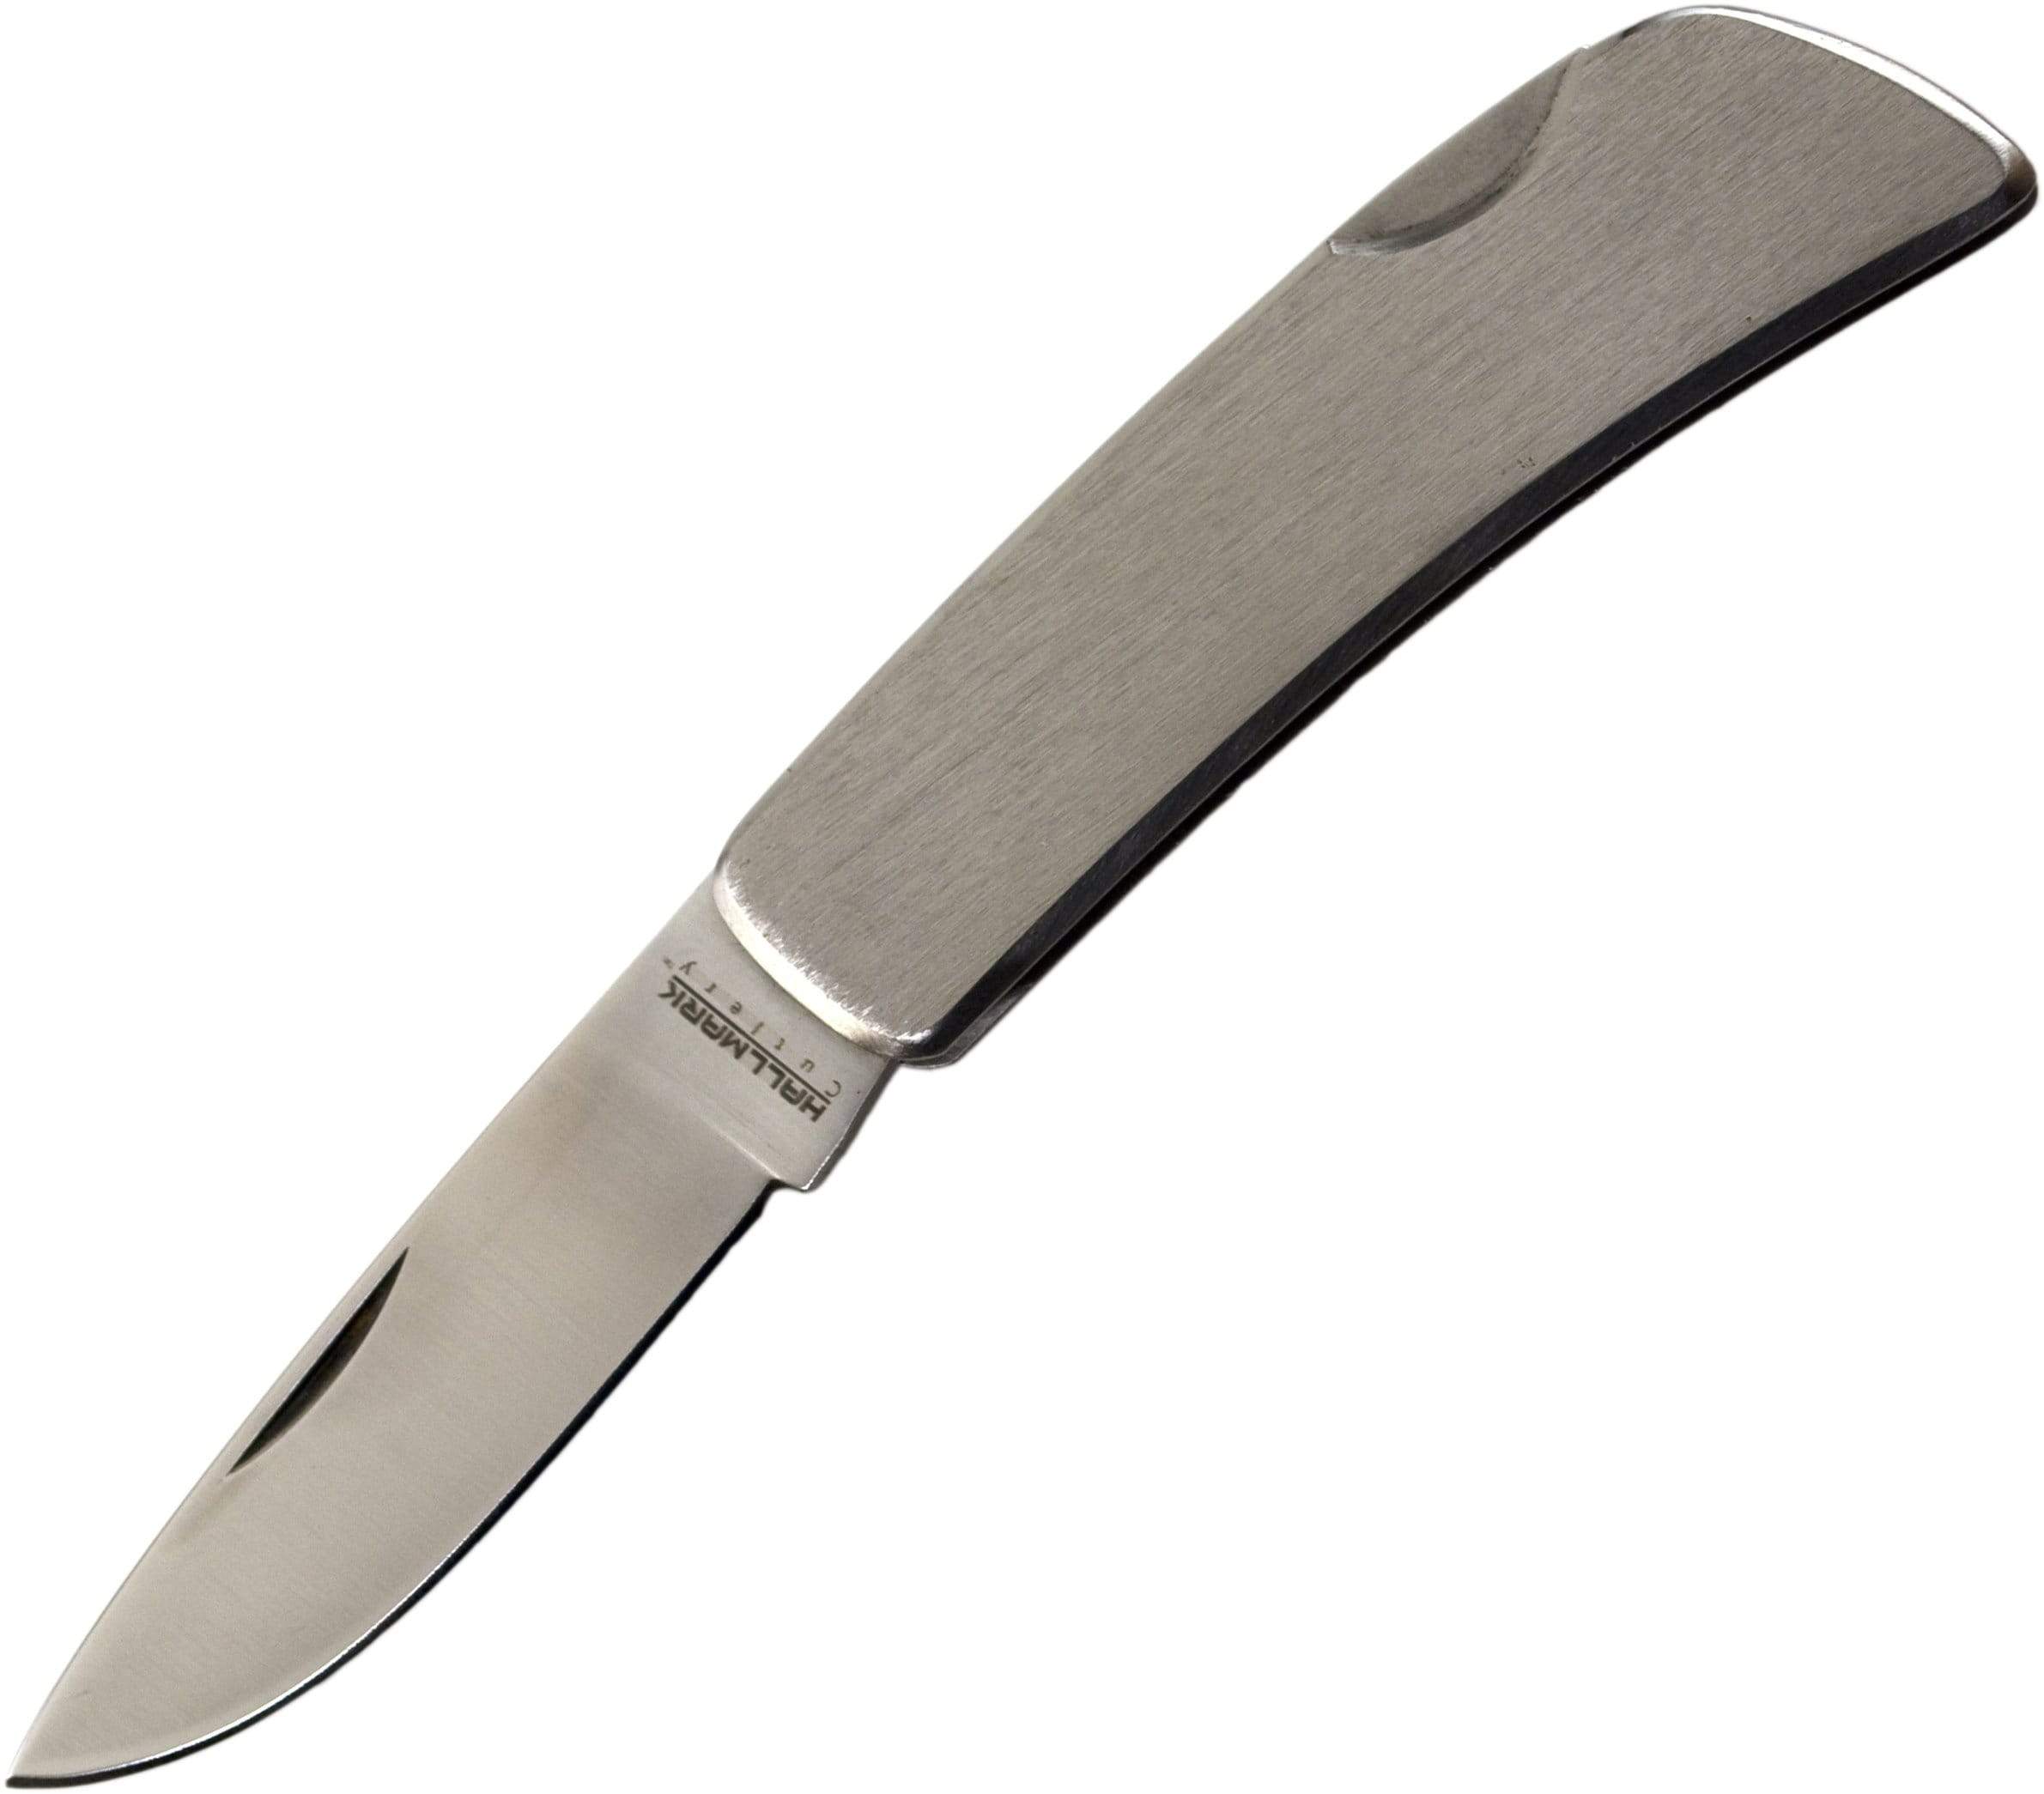 HallMark Stainless Steel Lockback Pocket Knife